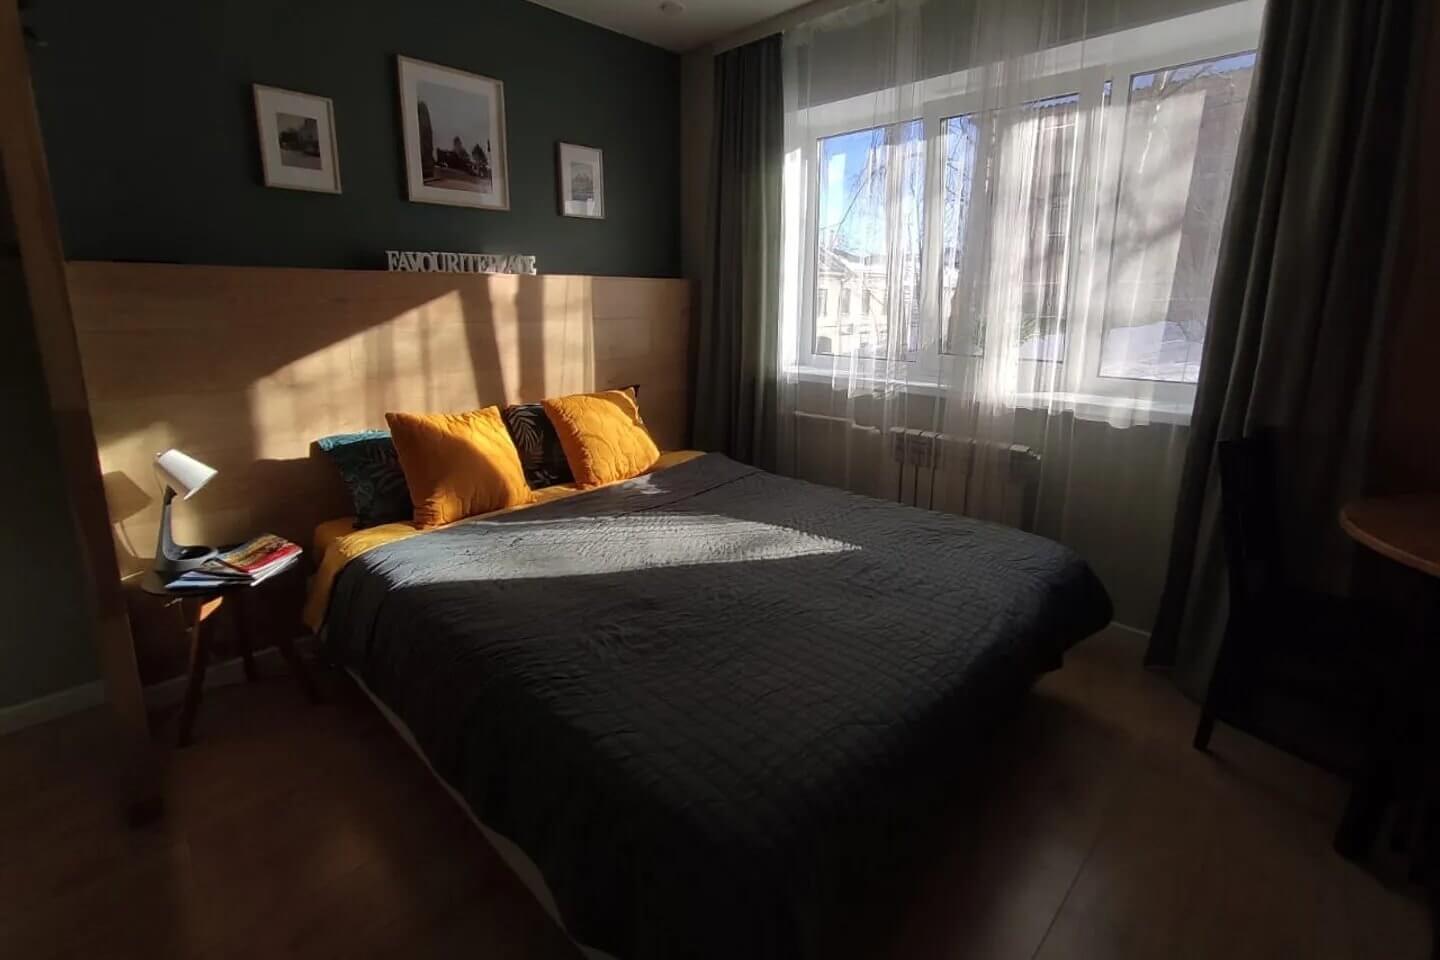 Кровать установлена возле окна. Подушки - желтые.